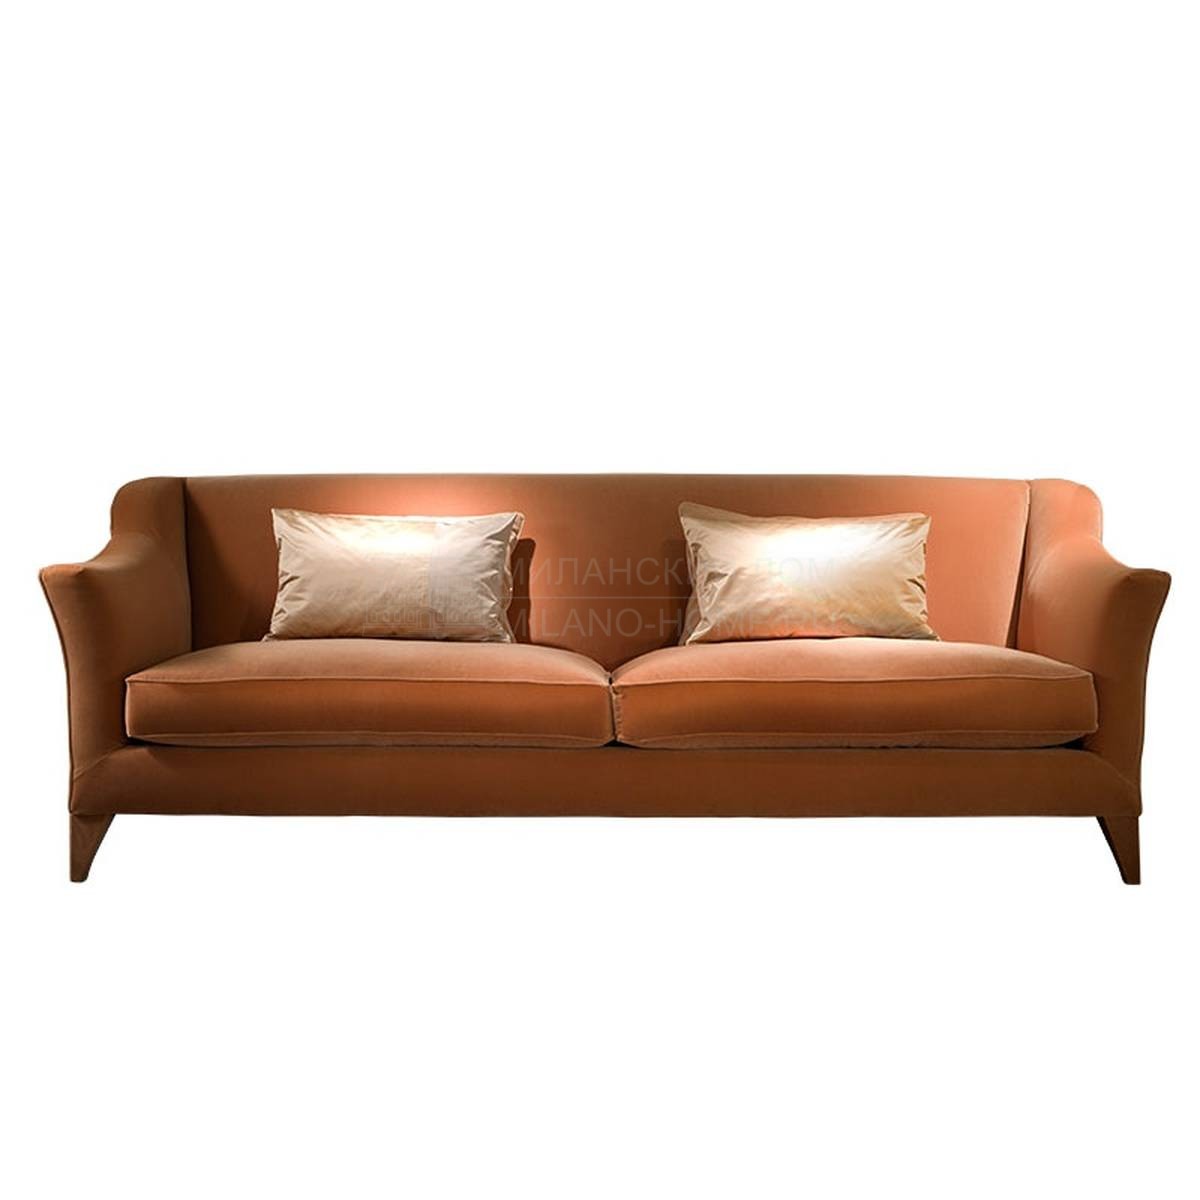 Прямой диван Ugo / sofa из Италии фабрики SOFTHOUSE